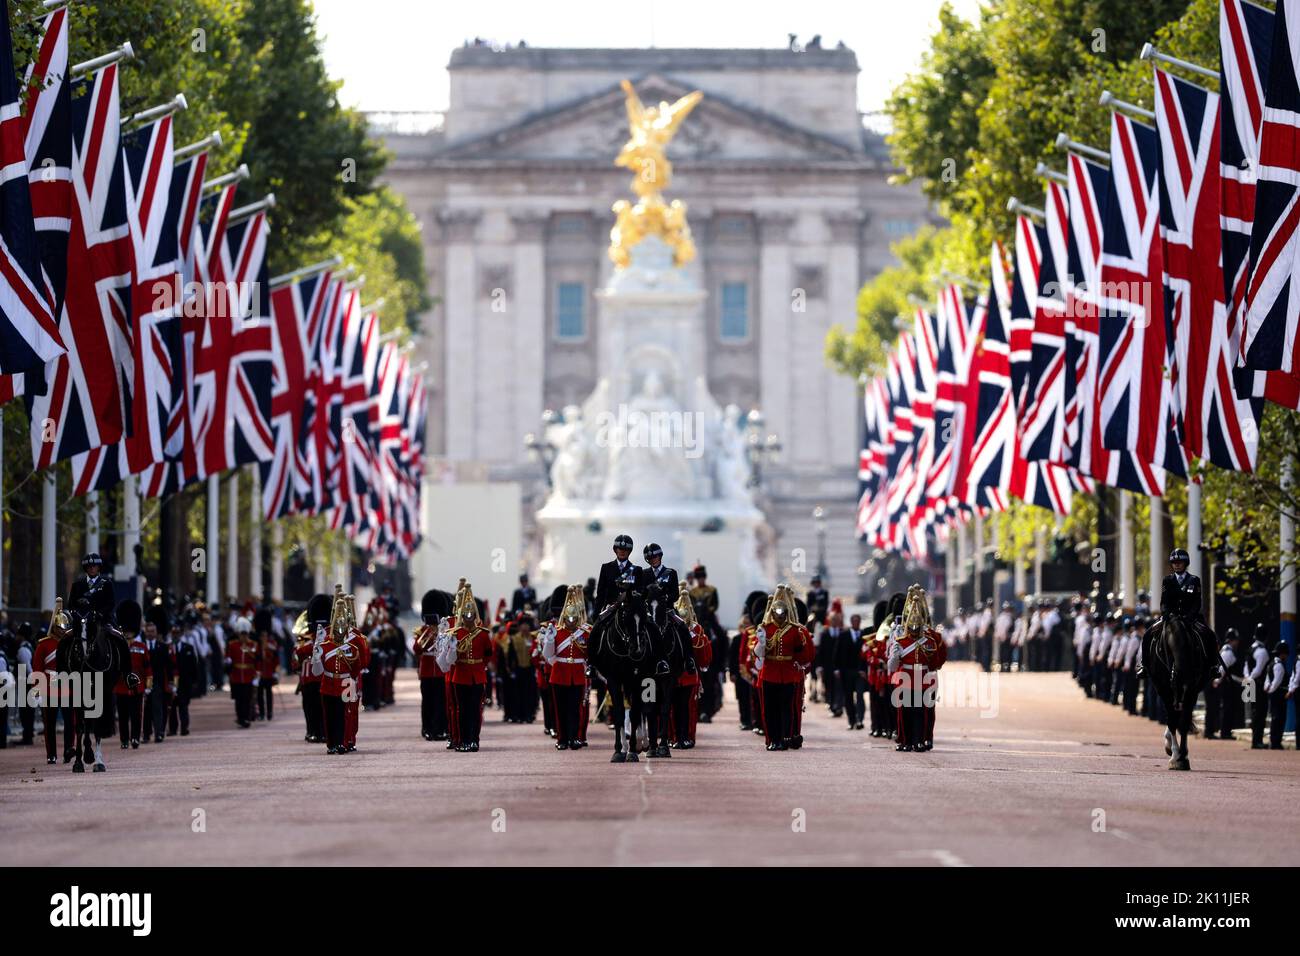 Des membres des gardes Grenadiers, de la troupe royale d'artillerie équine, de la cavalerie royale et des hauts membres de la famille royale suivent le cercueil de la reine Elizabeth II lors d'une procession du Palais de Buckingham à Westminster Hall à Londres, mercredi sur 14 septembre 2022, Où le cercueil de la reine Elizabeth II, se trouve dans l'État. La reine Elizabeth II sera dans l'État de Westminster Hall à l'intérieur du Palais de Westminster, de mercredi à quelques heures avant ses funérailles de lundi, avec d'énormes files d'attente devant son cercueil pour payer leurs respects. Photo du ministre britannique du DEF Banque D'Images